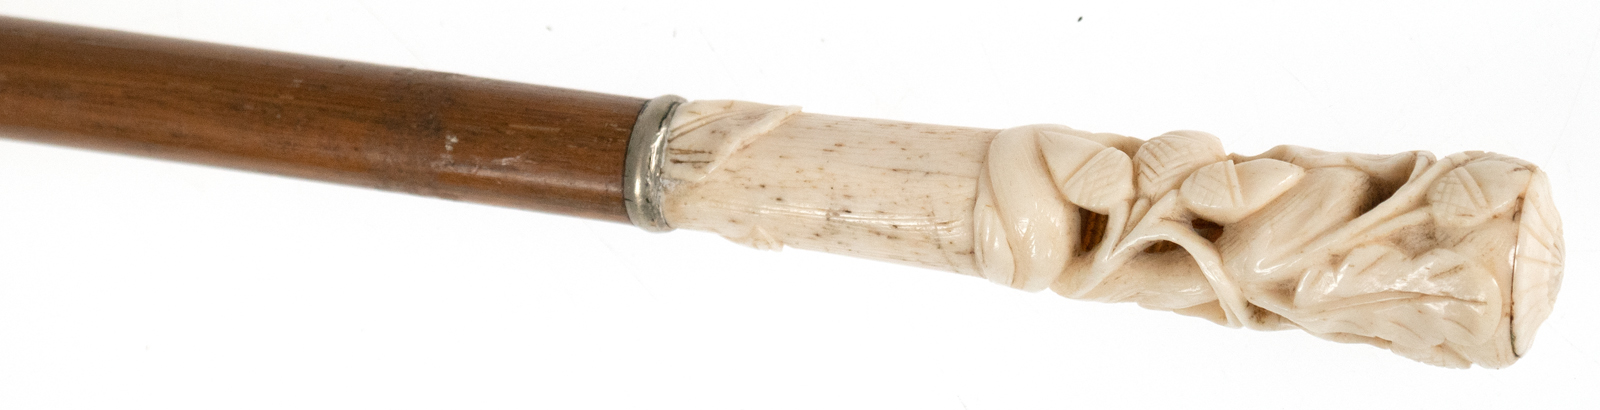 Spazierstock, Bambus, Bein-Knauf, durchbrochen geschnitzt mit Eicheldekor, L. 88 cm